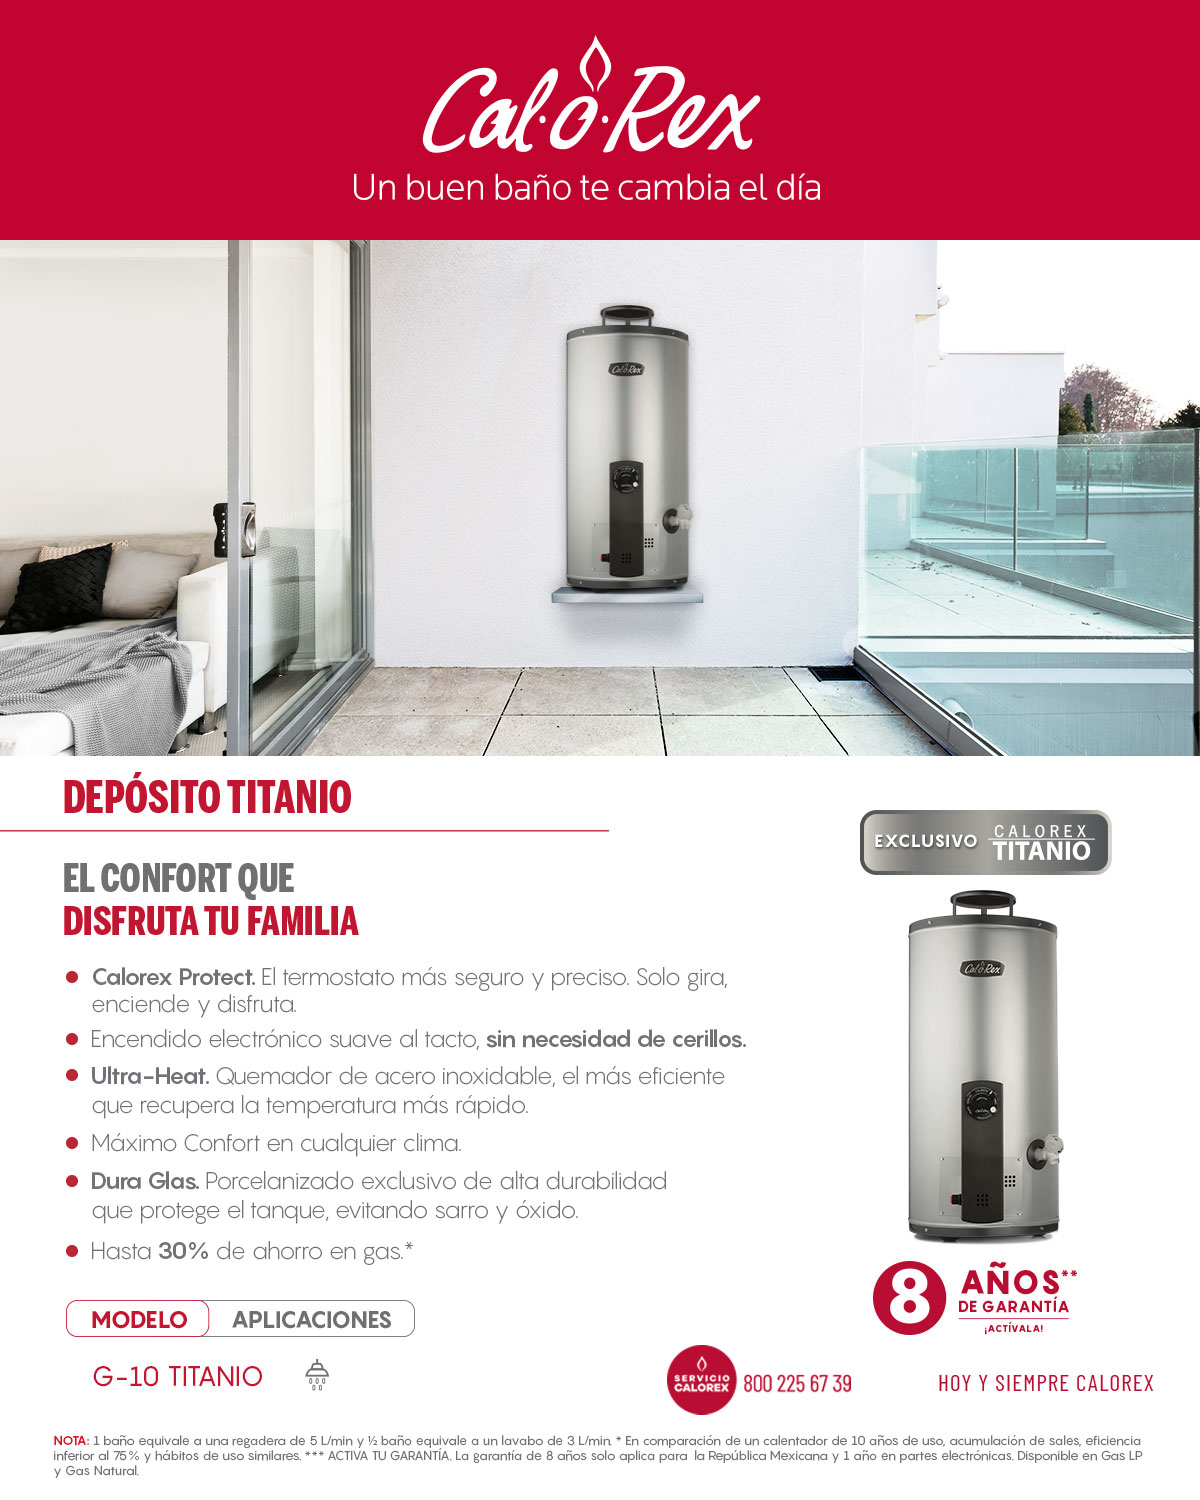 Calentadores de Agua de Depósito Titanio Calorex Home Depot México